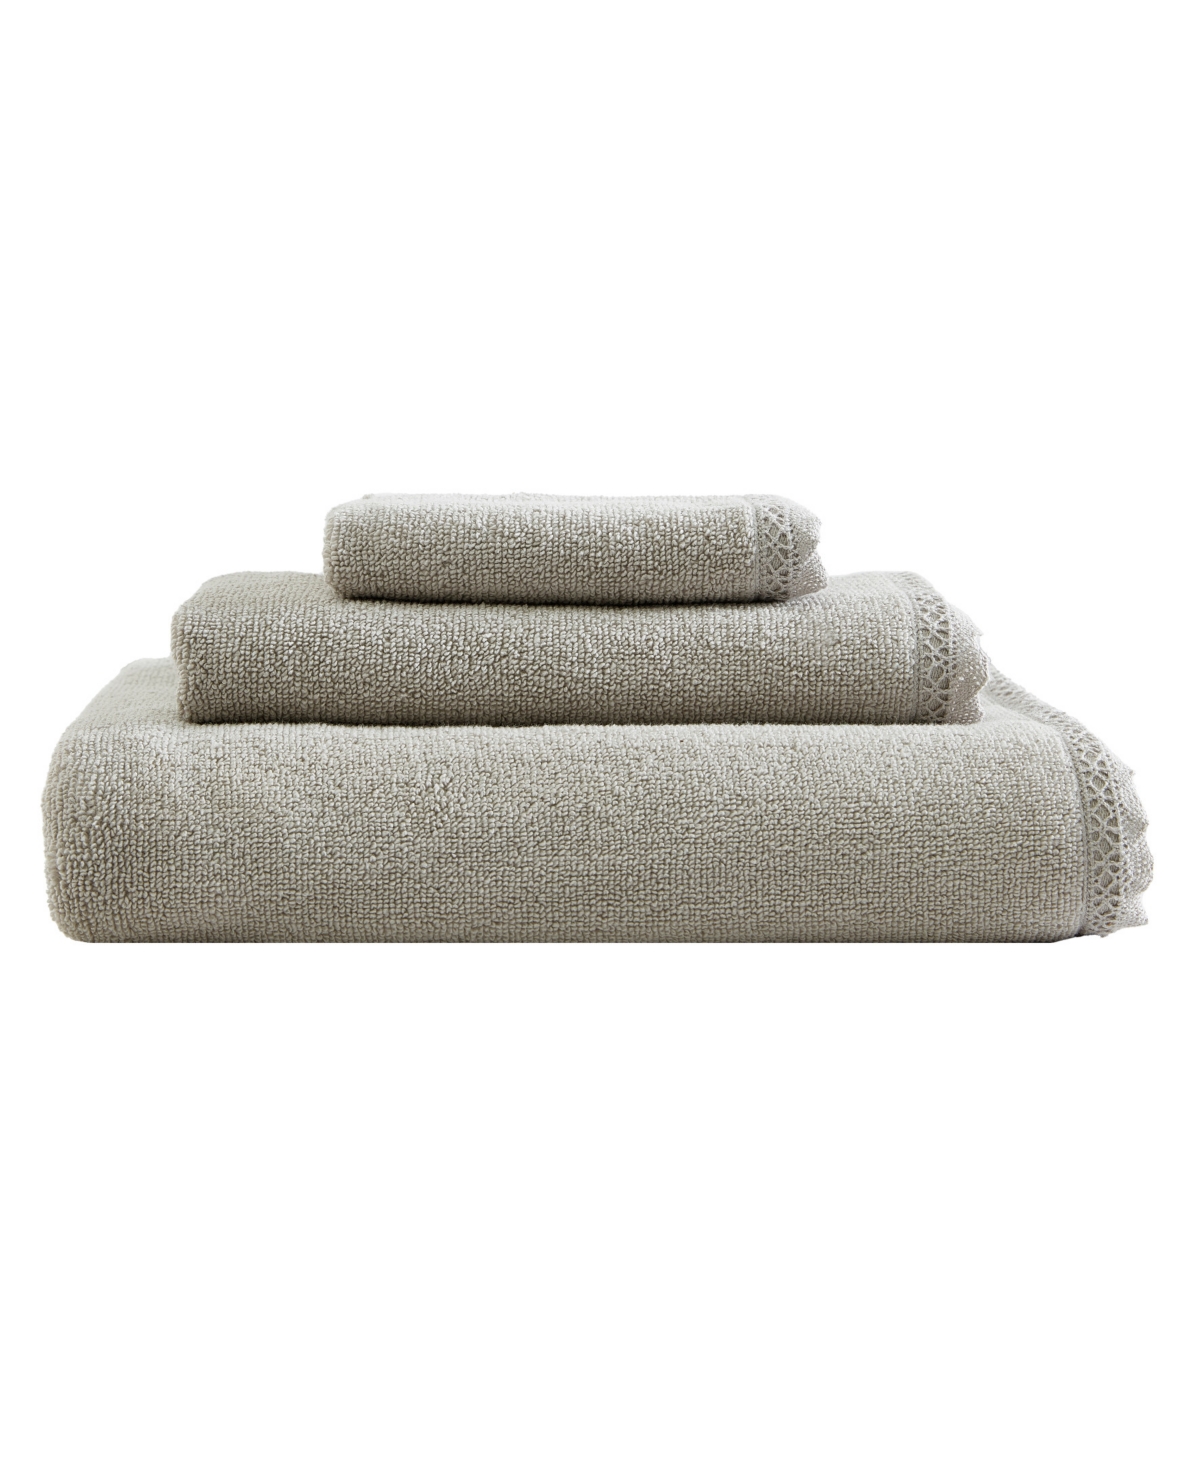 Laura Ashley Juliette Cotton Terry 3-pc Bath Towel Set In Pebble Gray